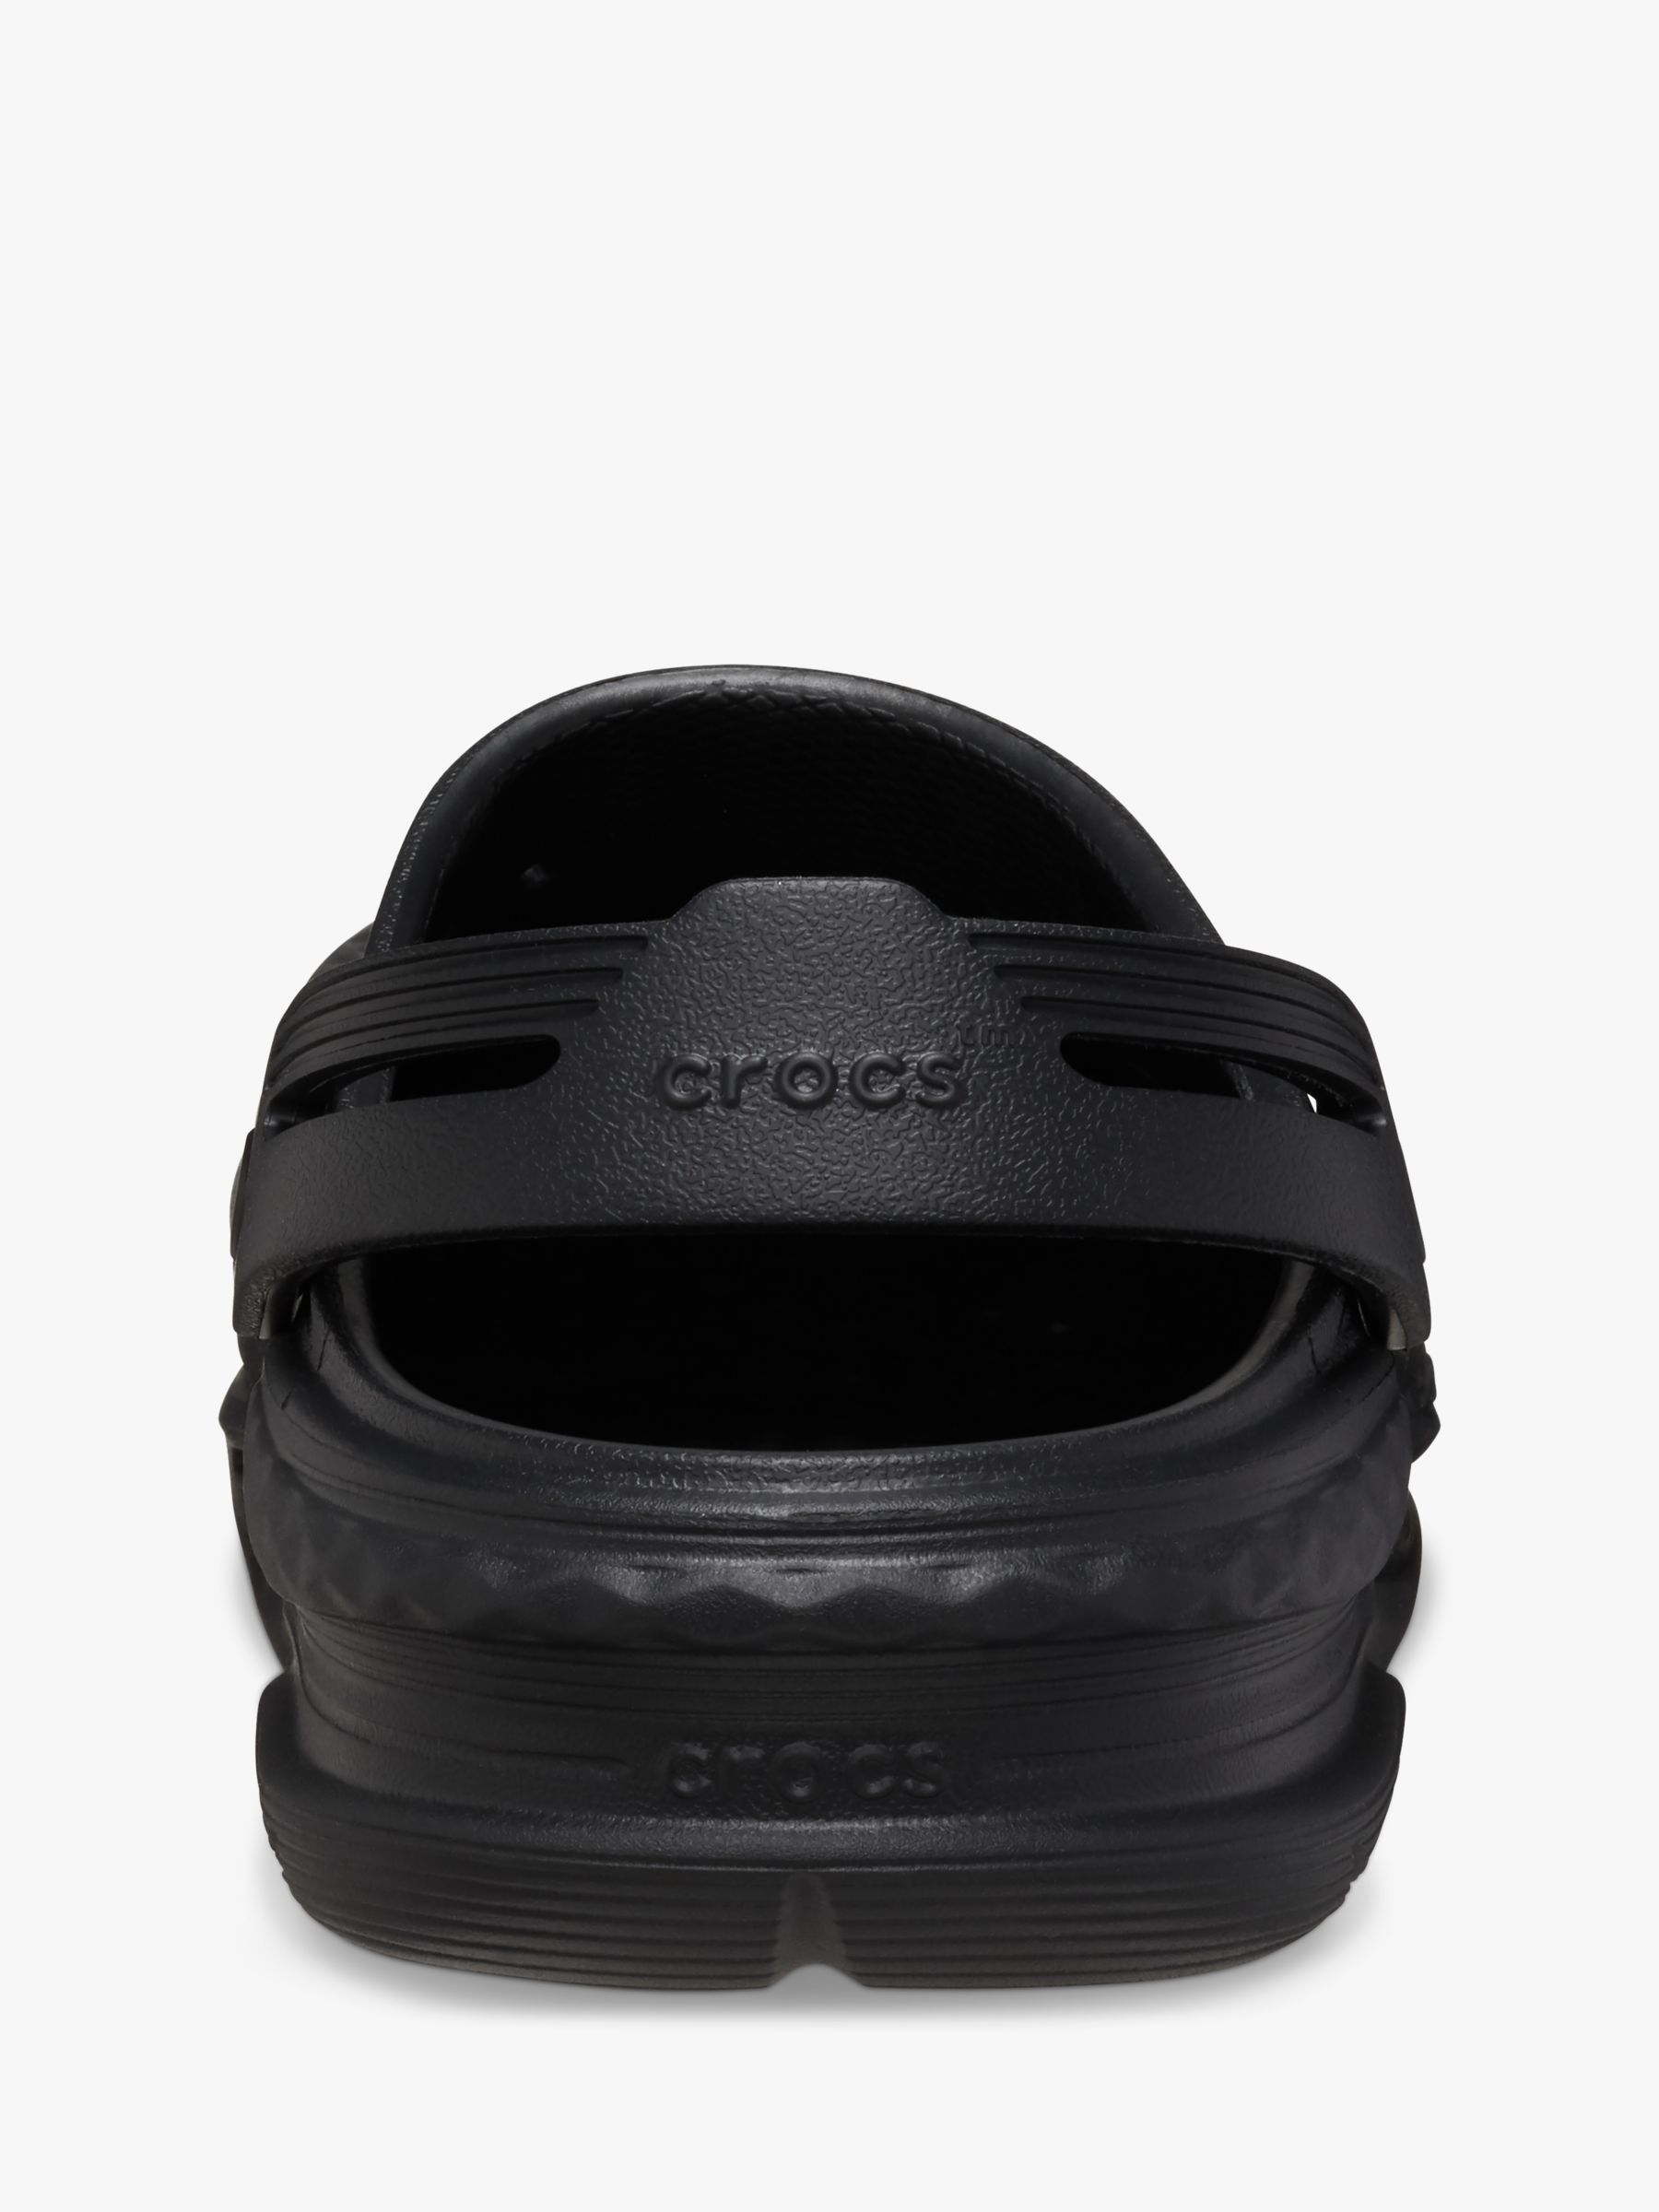 Crocs Off Grid Clog, Black, 9